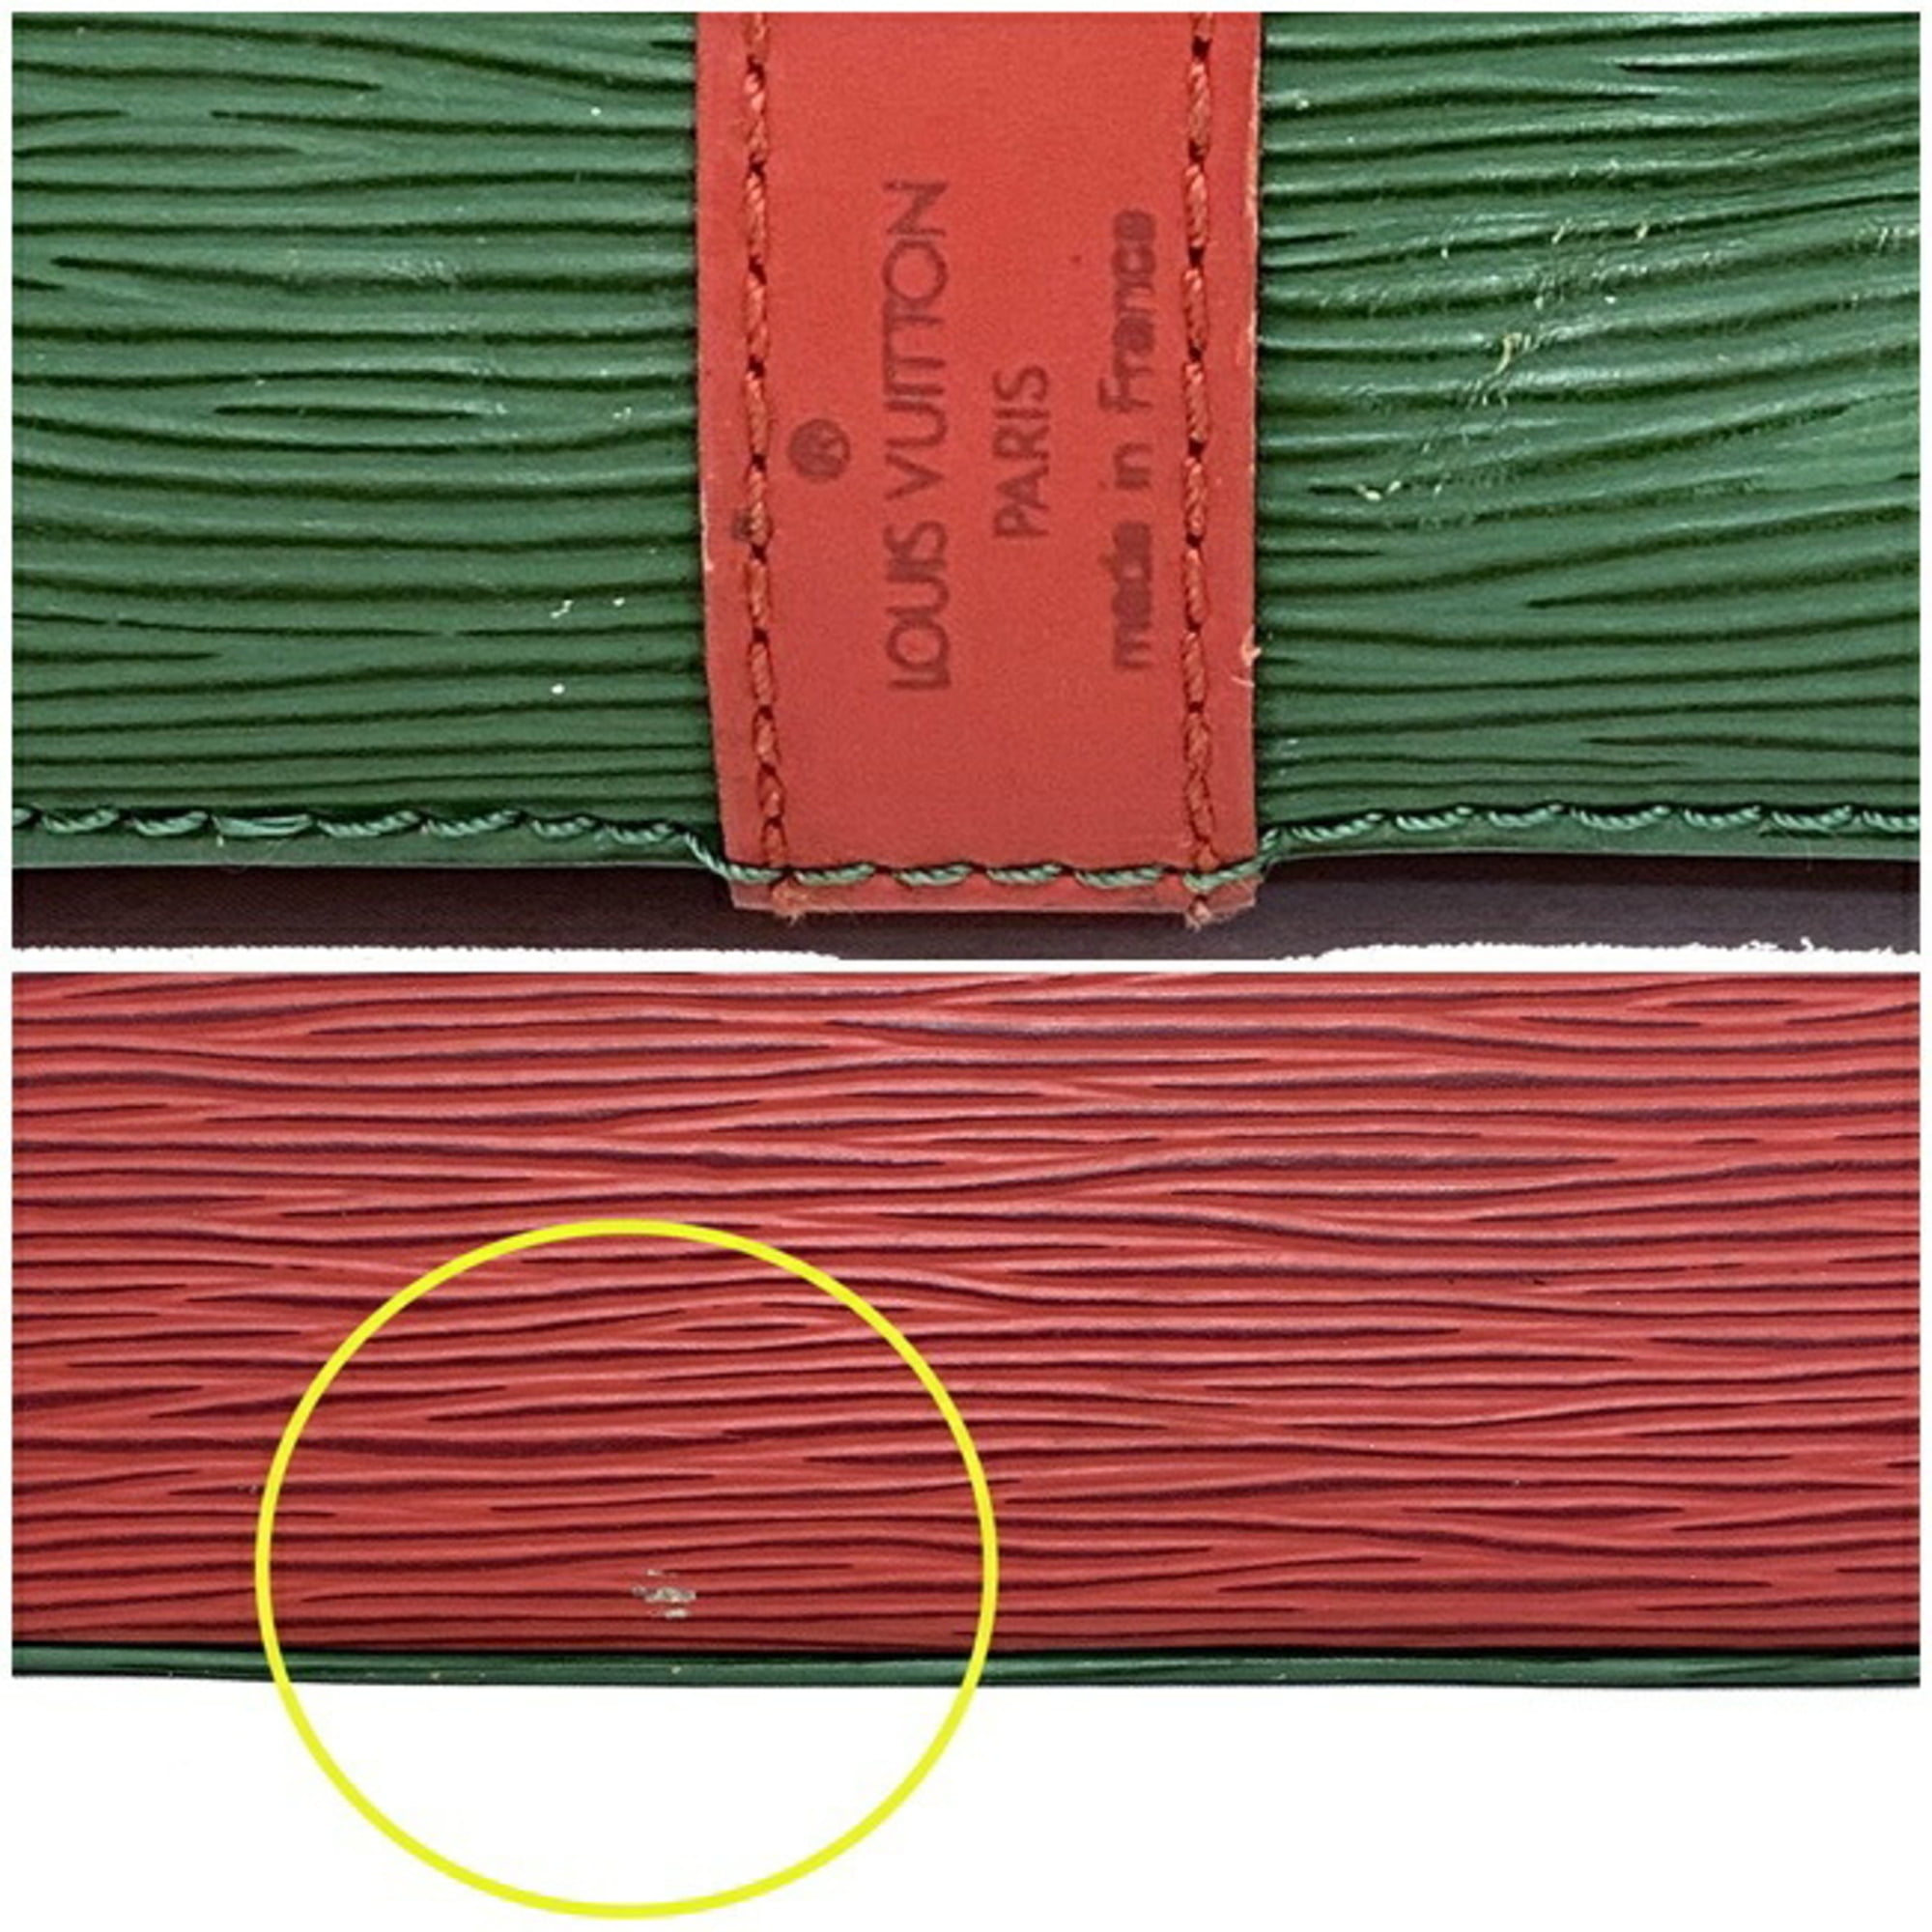 LOUIS VUITTON Epi Noe Tricolor Shoulder Bag Red Blue Green M44082 LV Auth  ar5434 Leather ref.459058 - Joli Closet